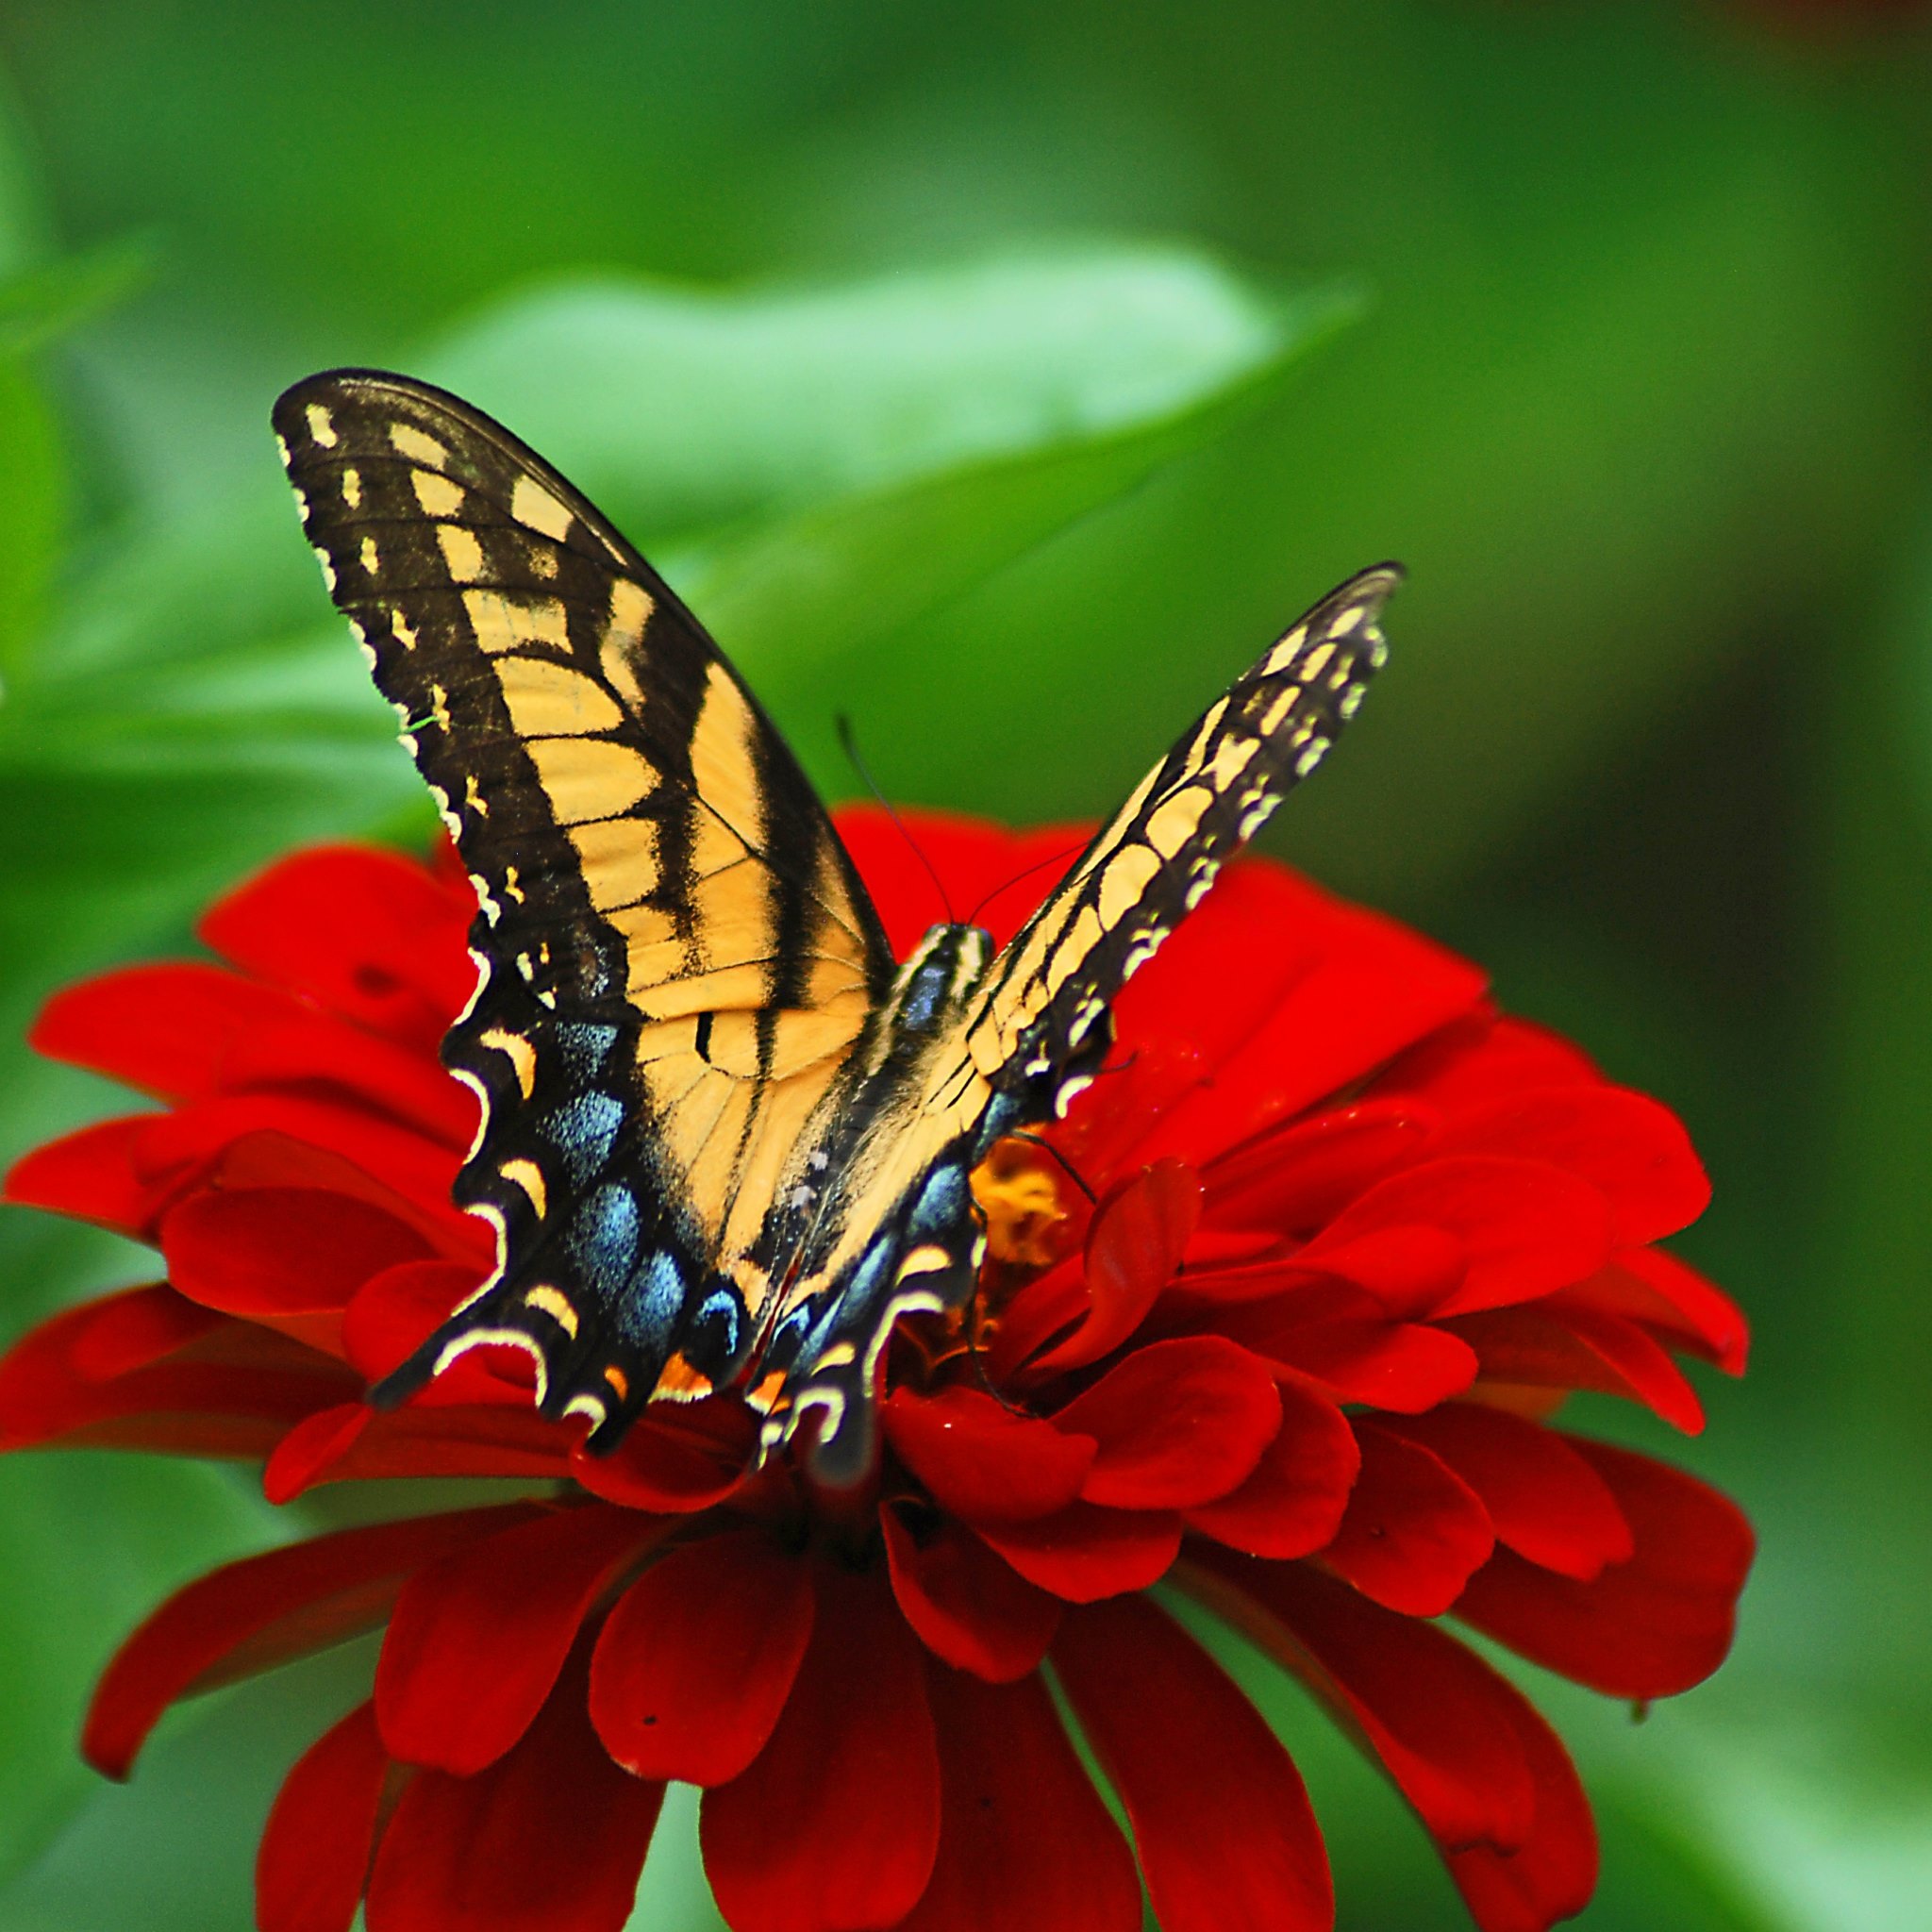 Цветок красные бабочки. Бабочка на цветке. Бабочки в цветах. Заставка на аватарку цветы. Открытка бабочка.